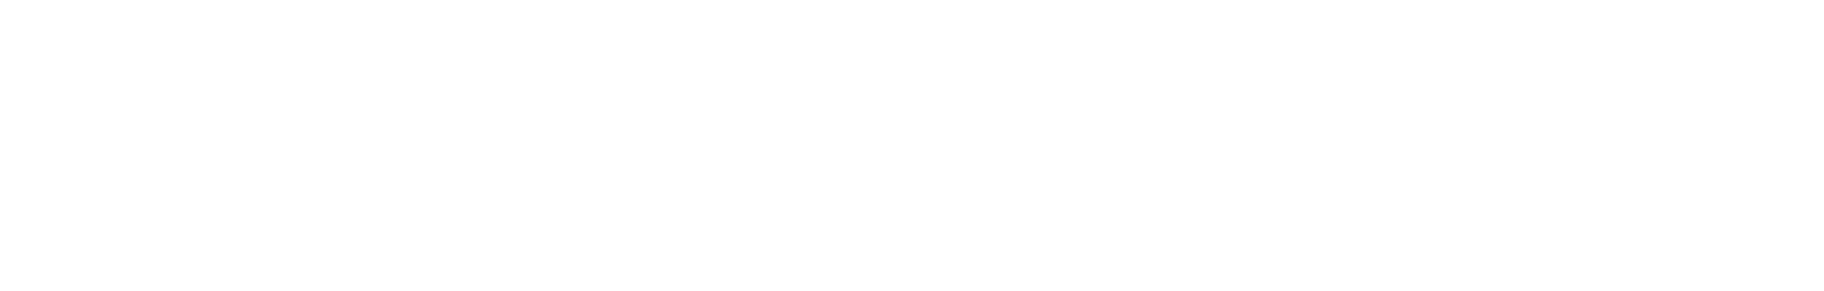 Internet Word Logo Design PNG